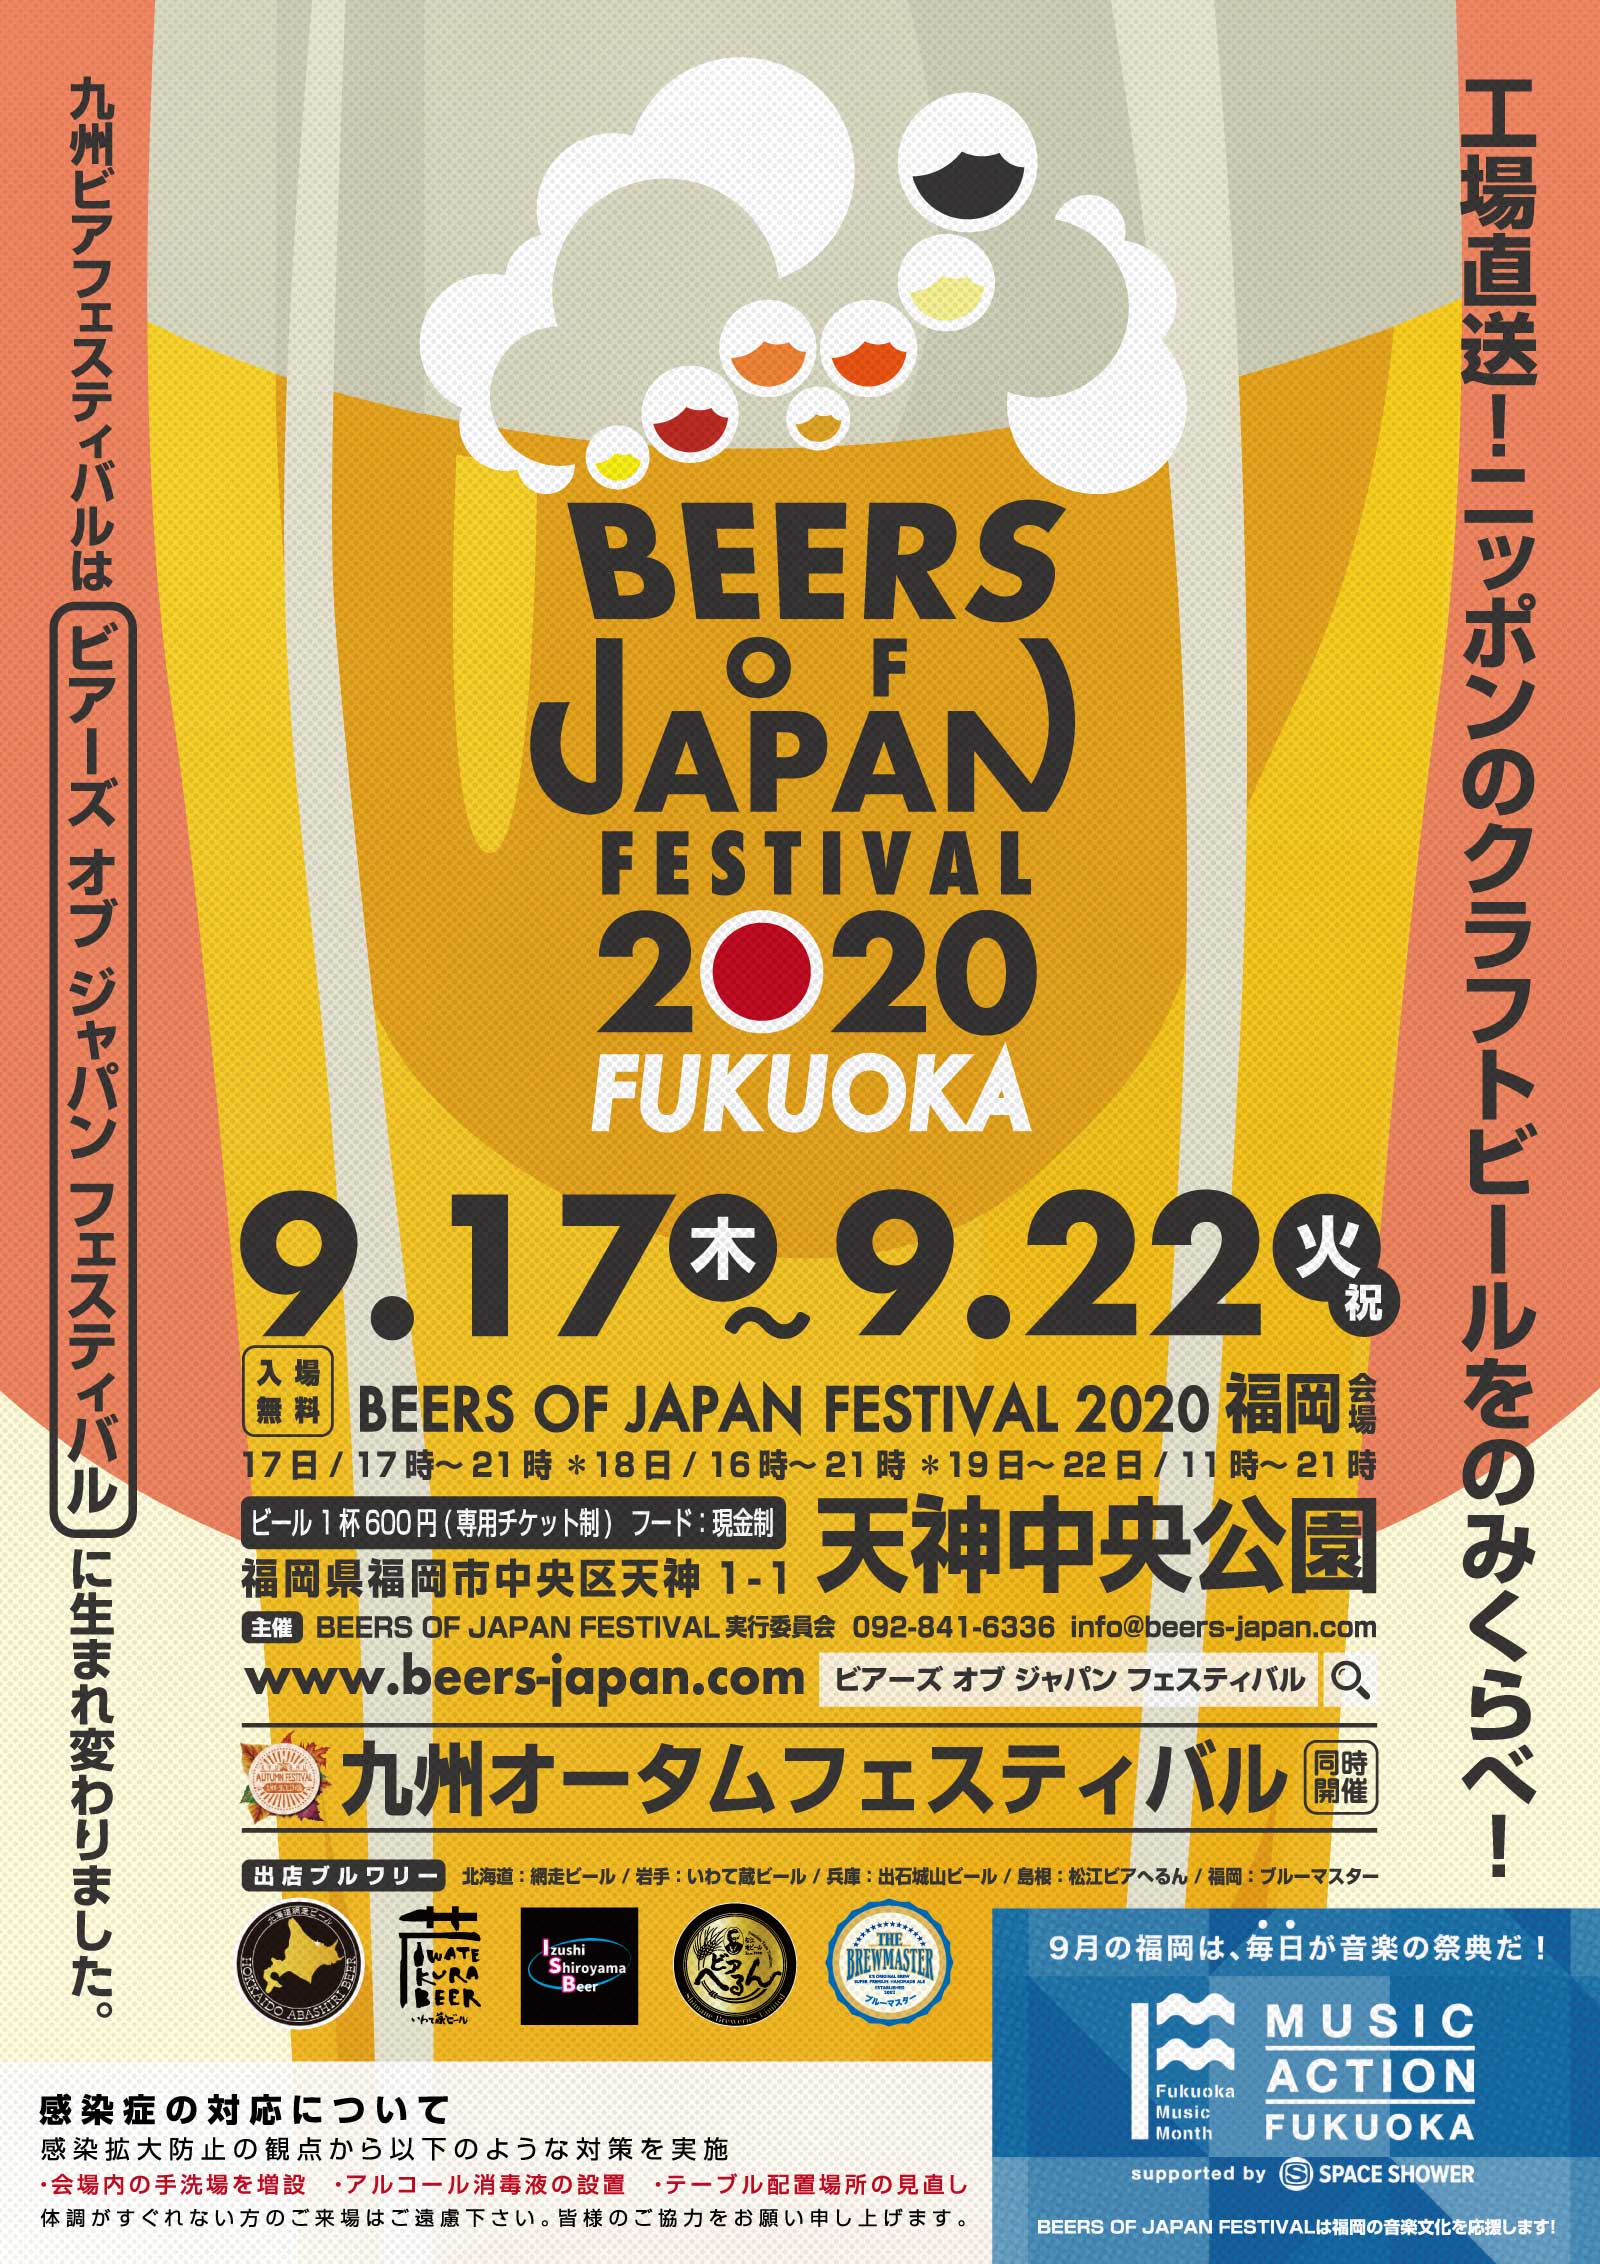 九州オータムフェスティバル&BEERS OF JAPAN FESTIVAL2020福岡